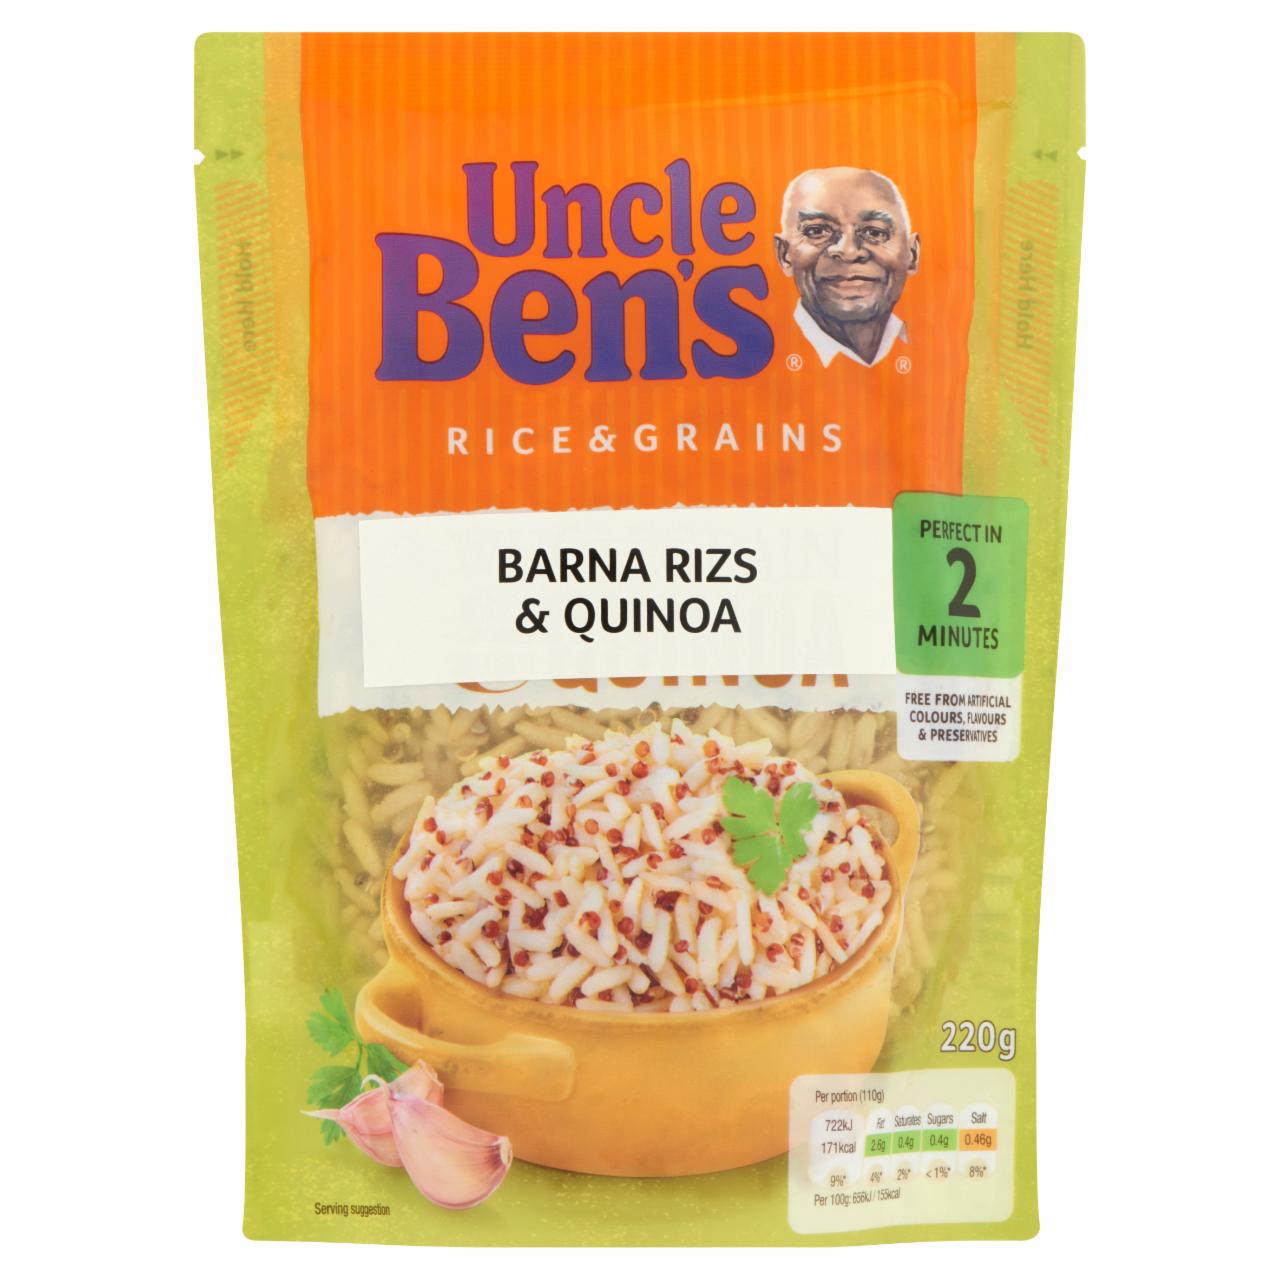 Képek - Uncle Ben's barna rizs & quinoa 220 g